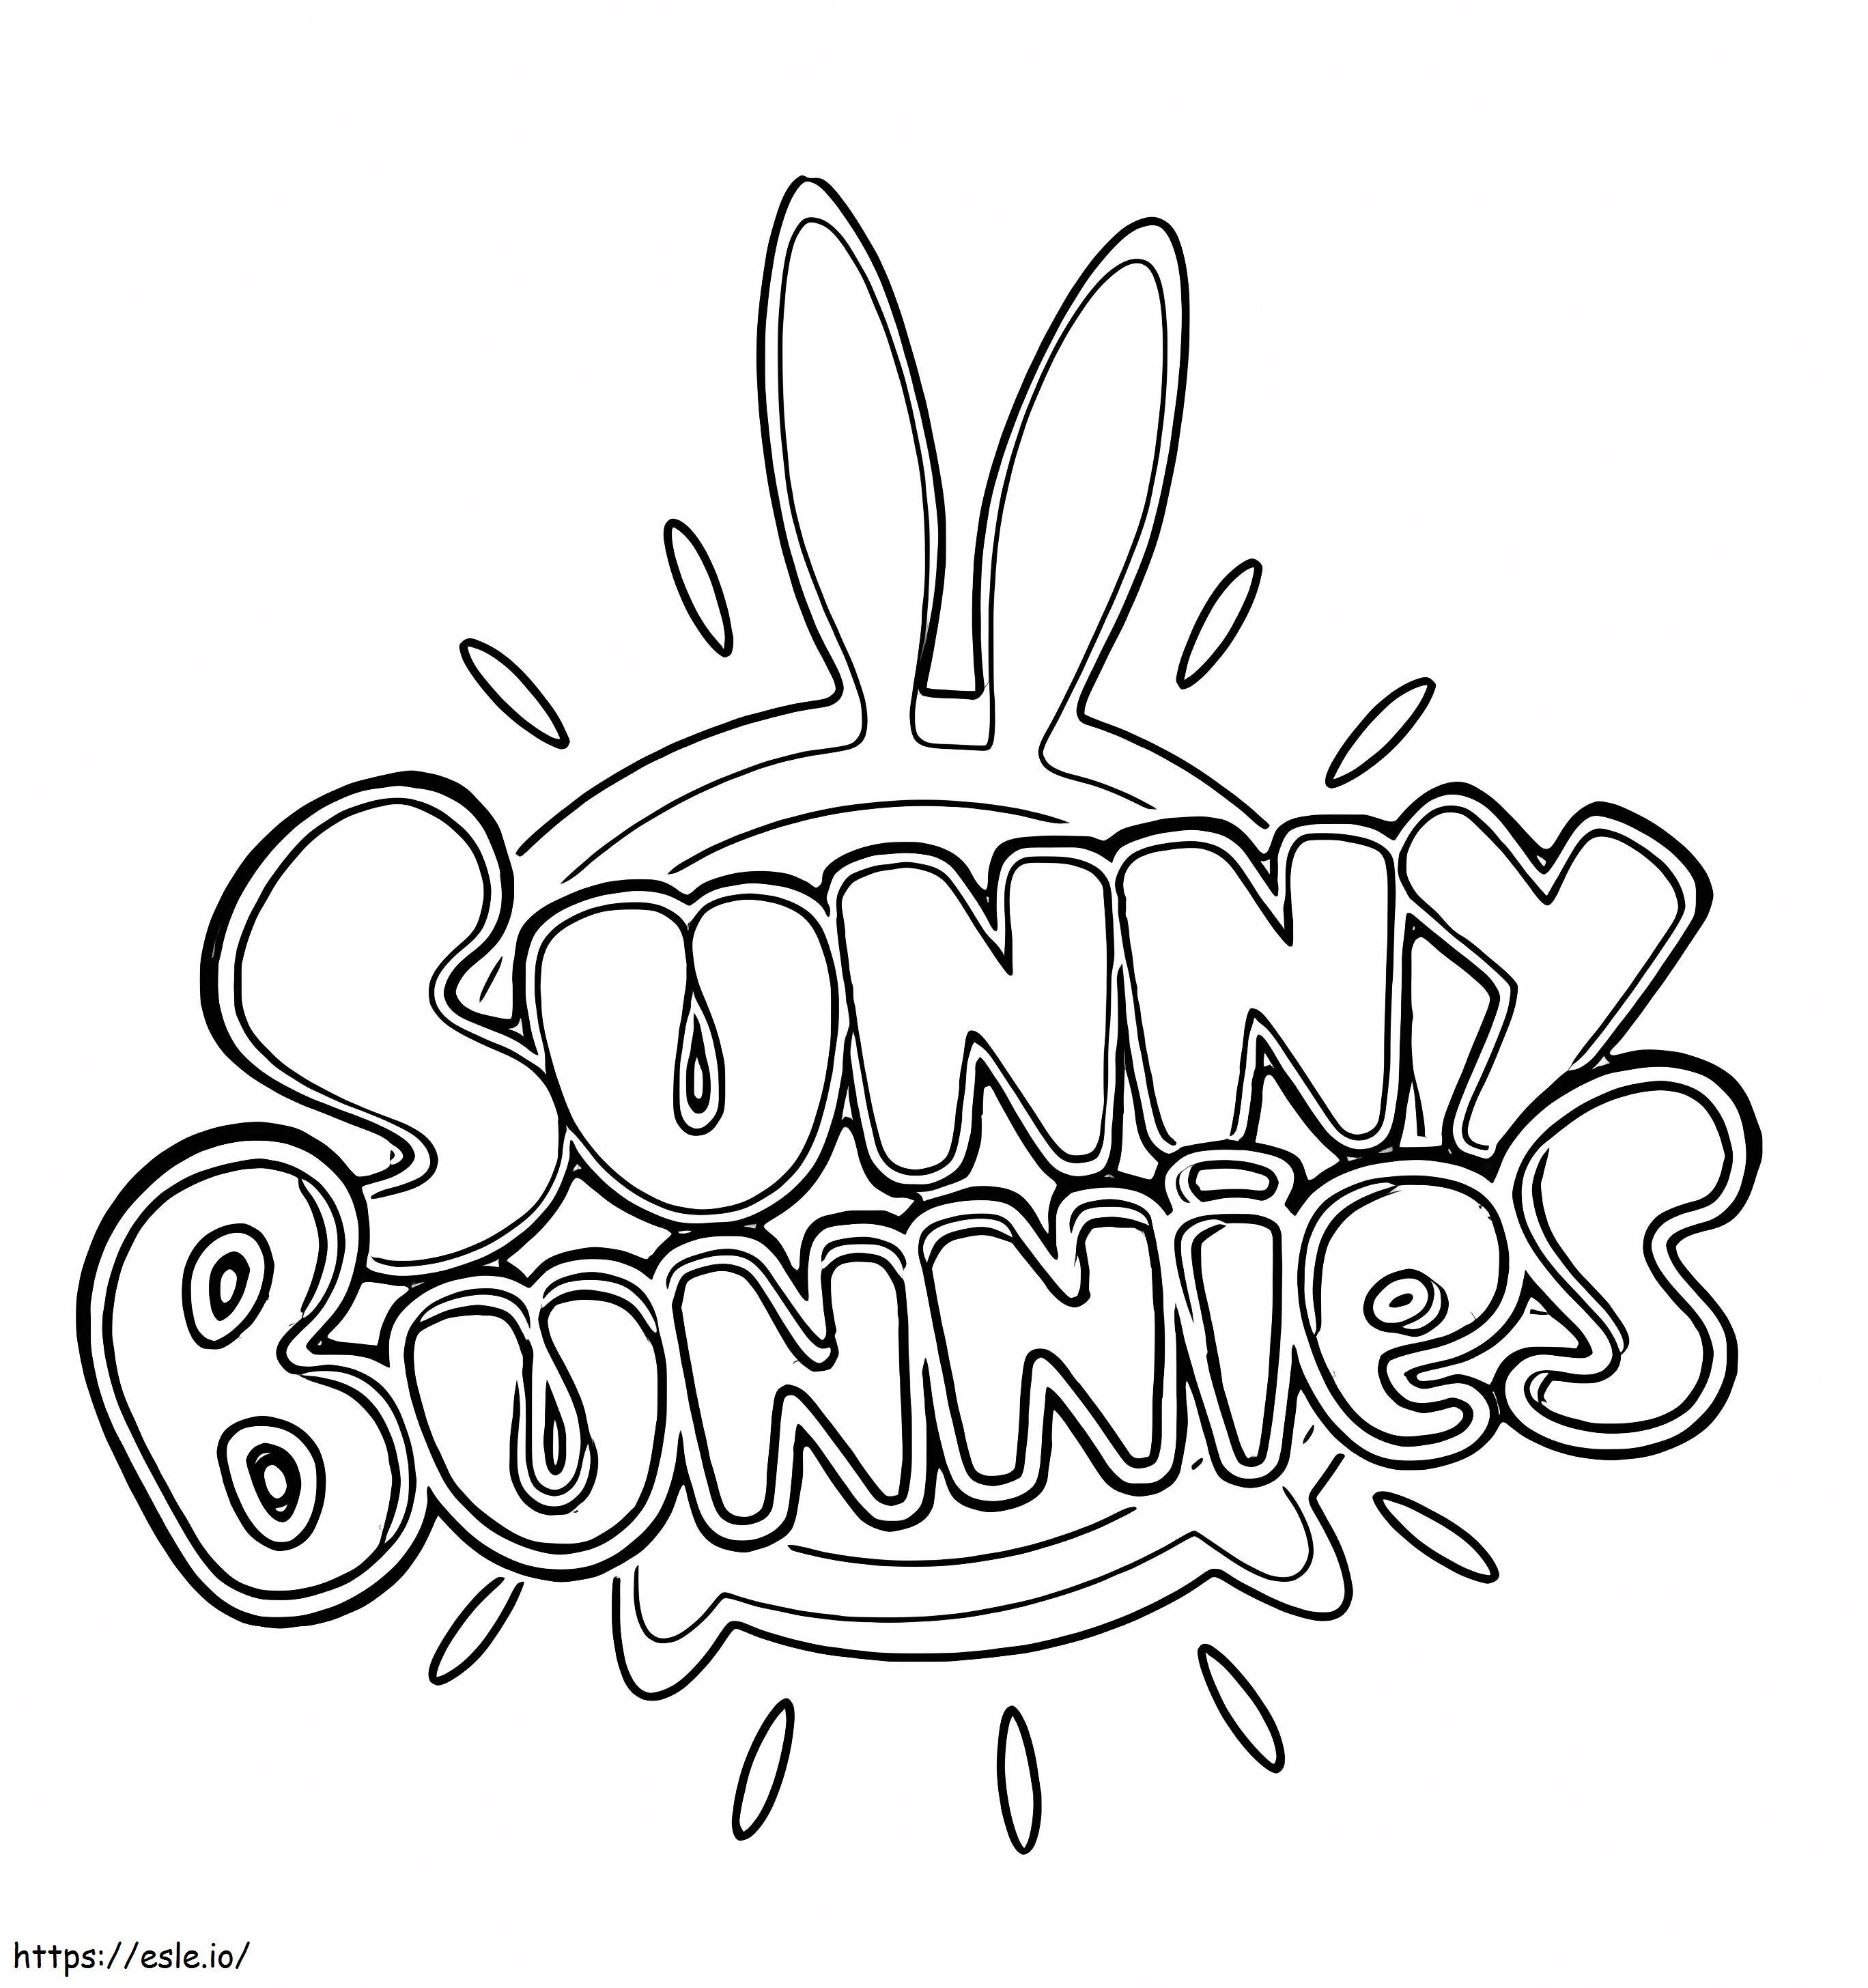 Logo Güneşli Tavşanlar boyama